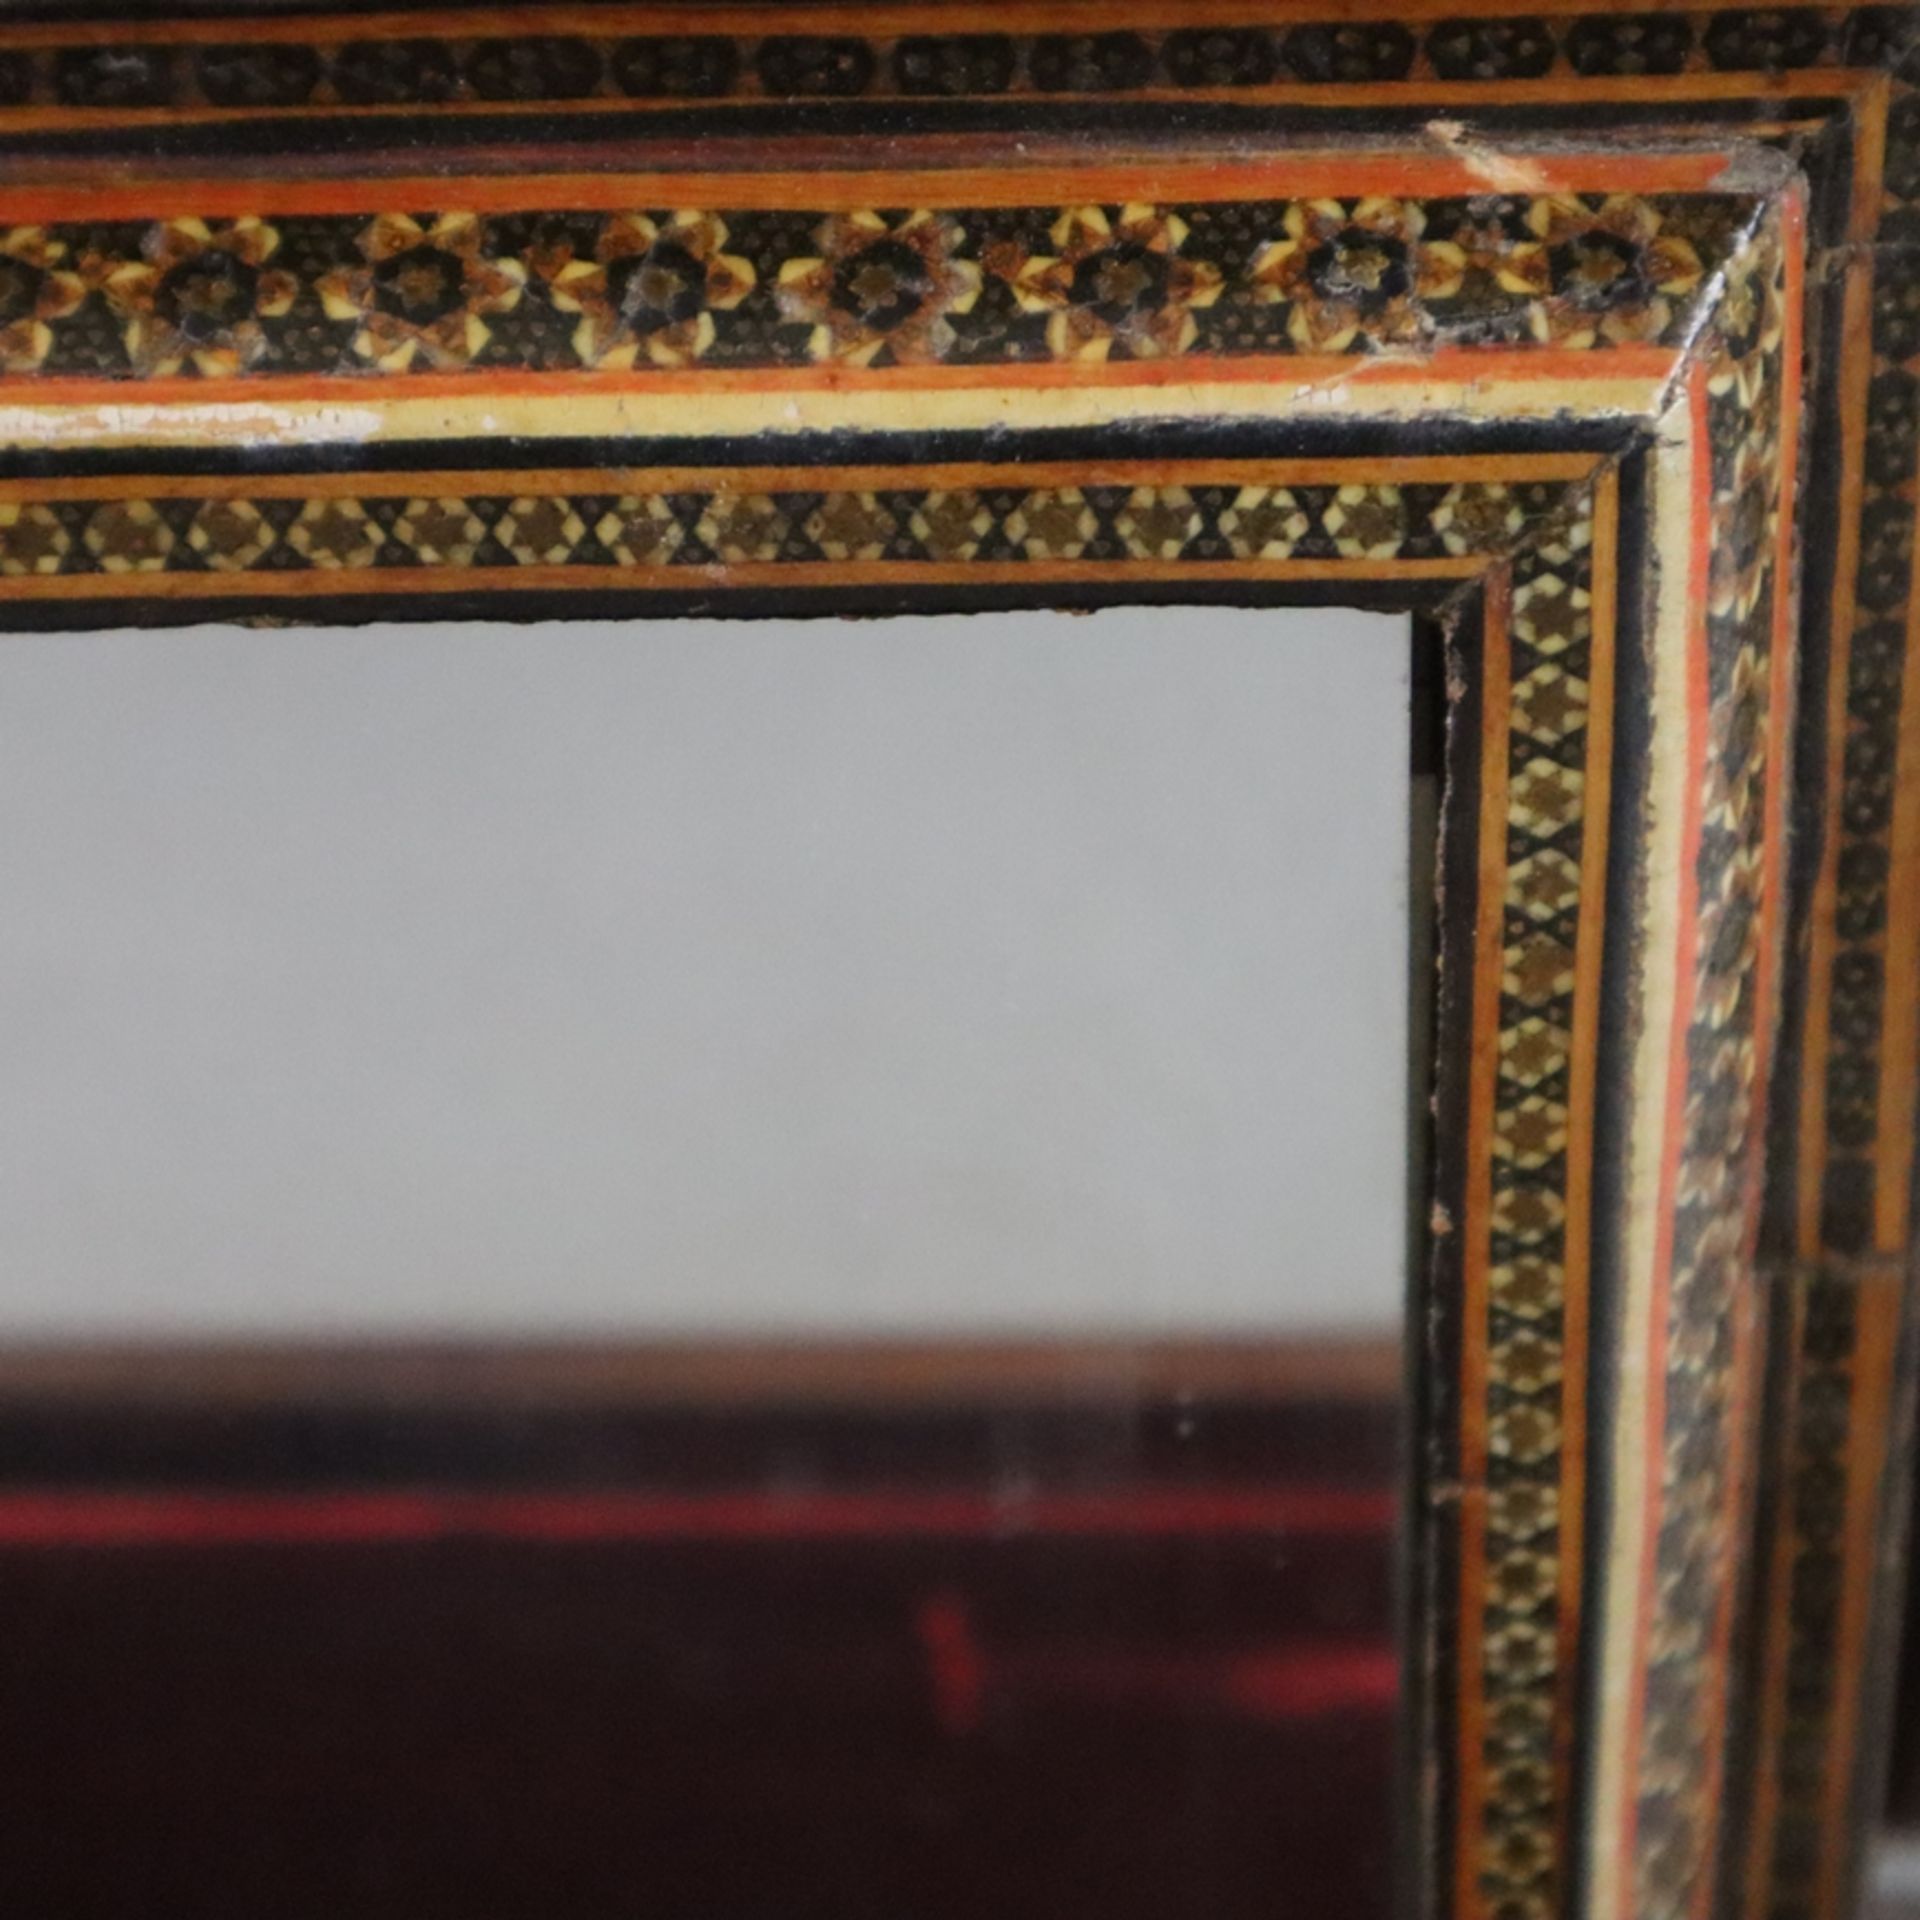 Spiegelschatulle - Persien, große Holzkassette mit durch Ketten gesichertem Scharnierdeckel, intars - Image 3 of 8